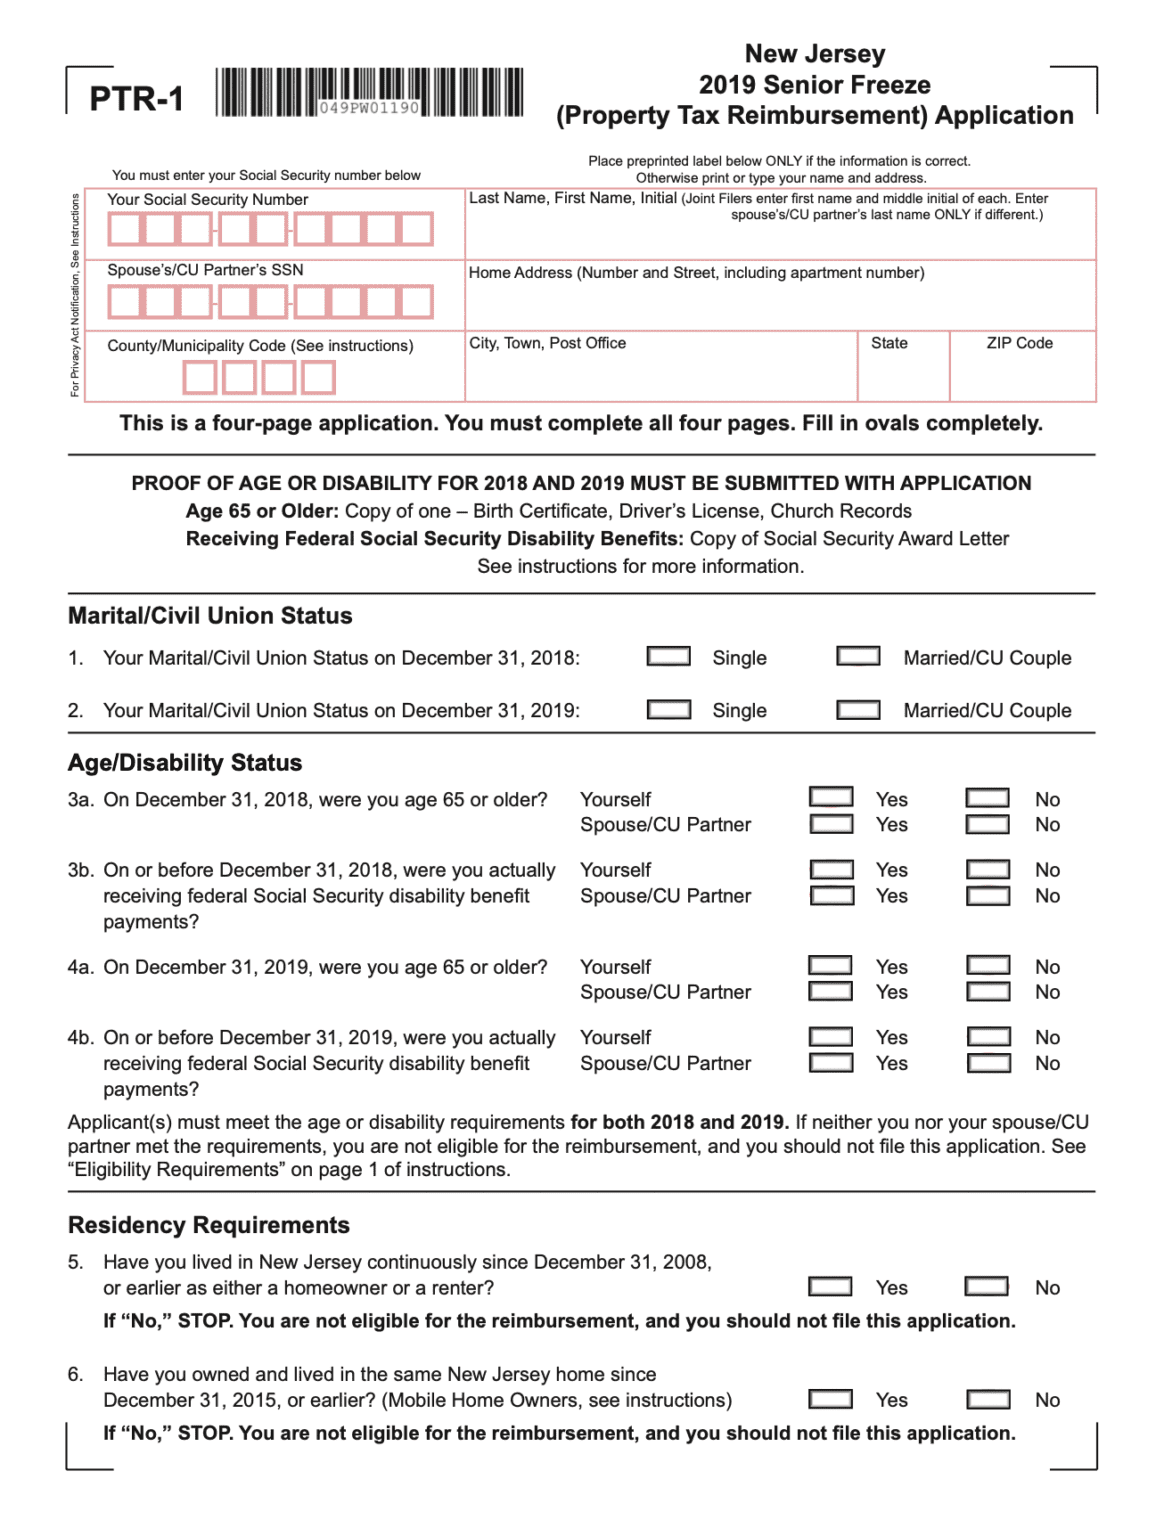 nj-tax-rebate-form-printable-rebate-form